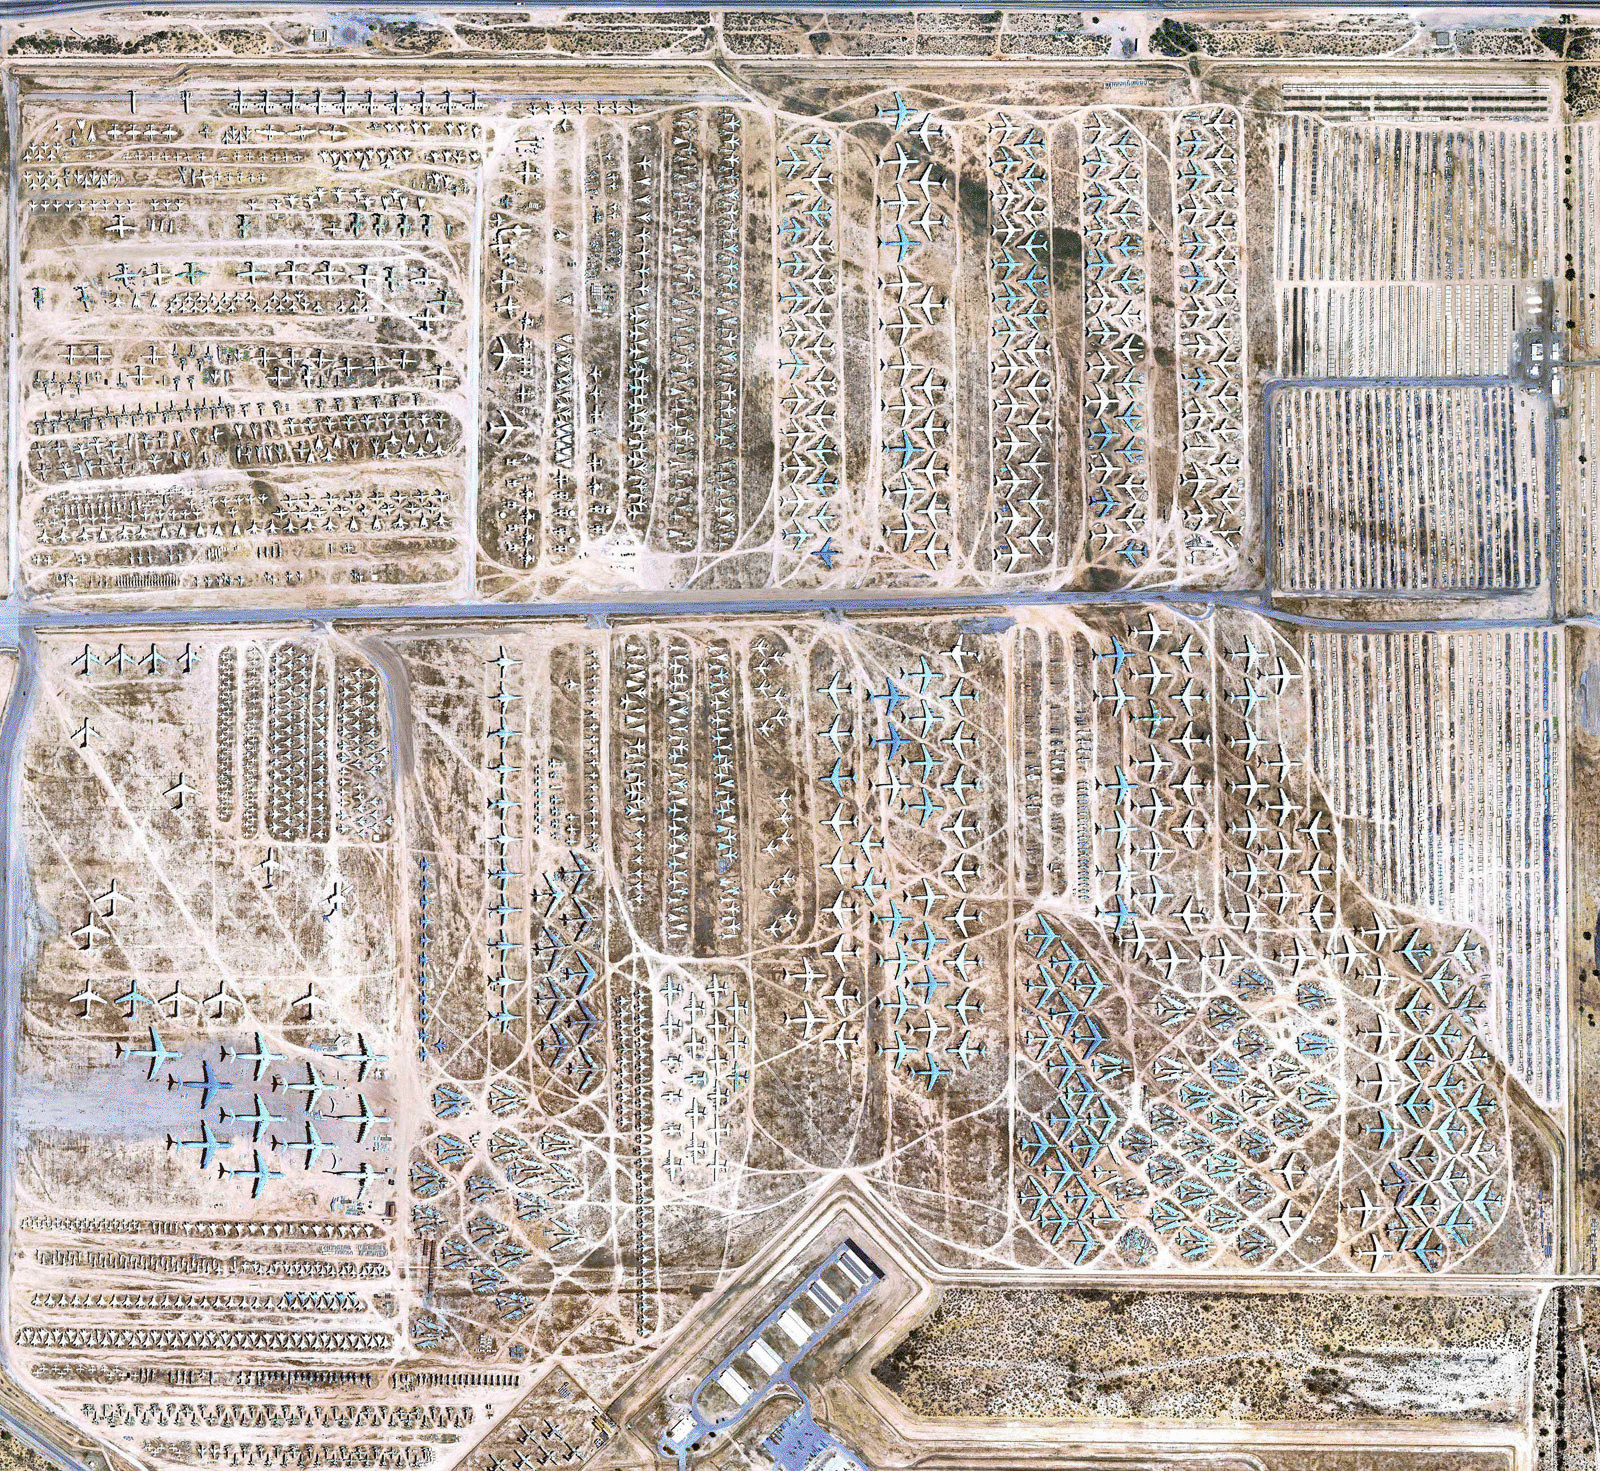 Google показал самое большое кладбище самолетов